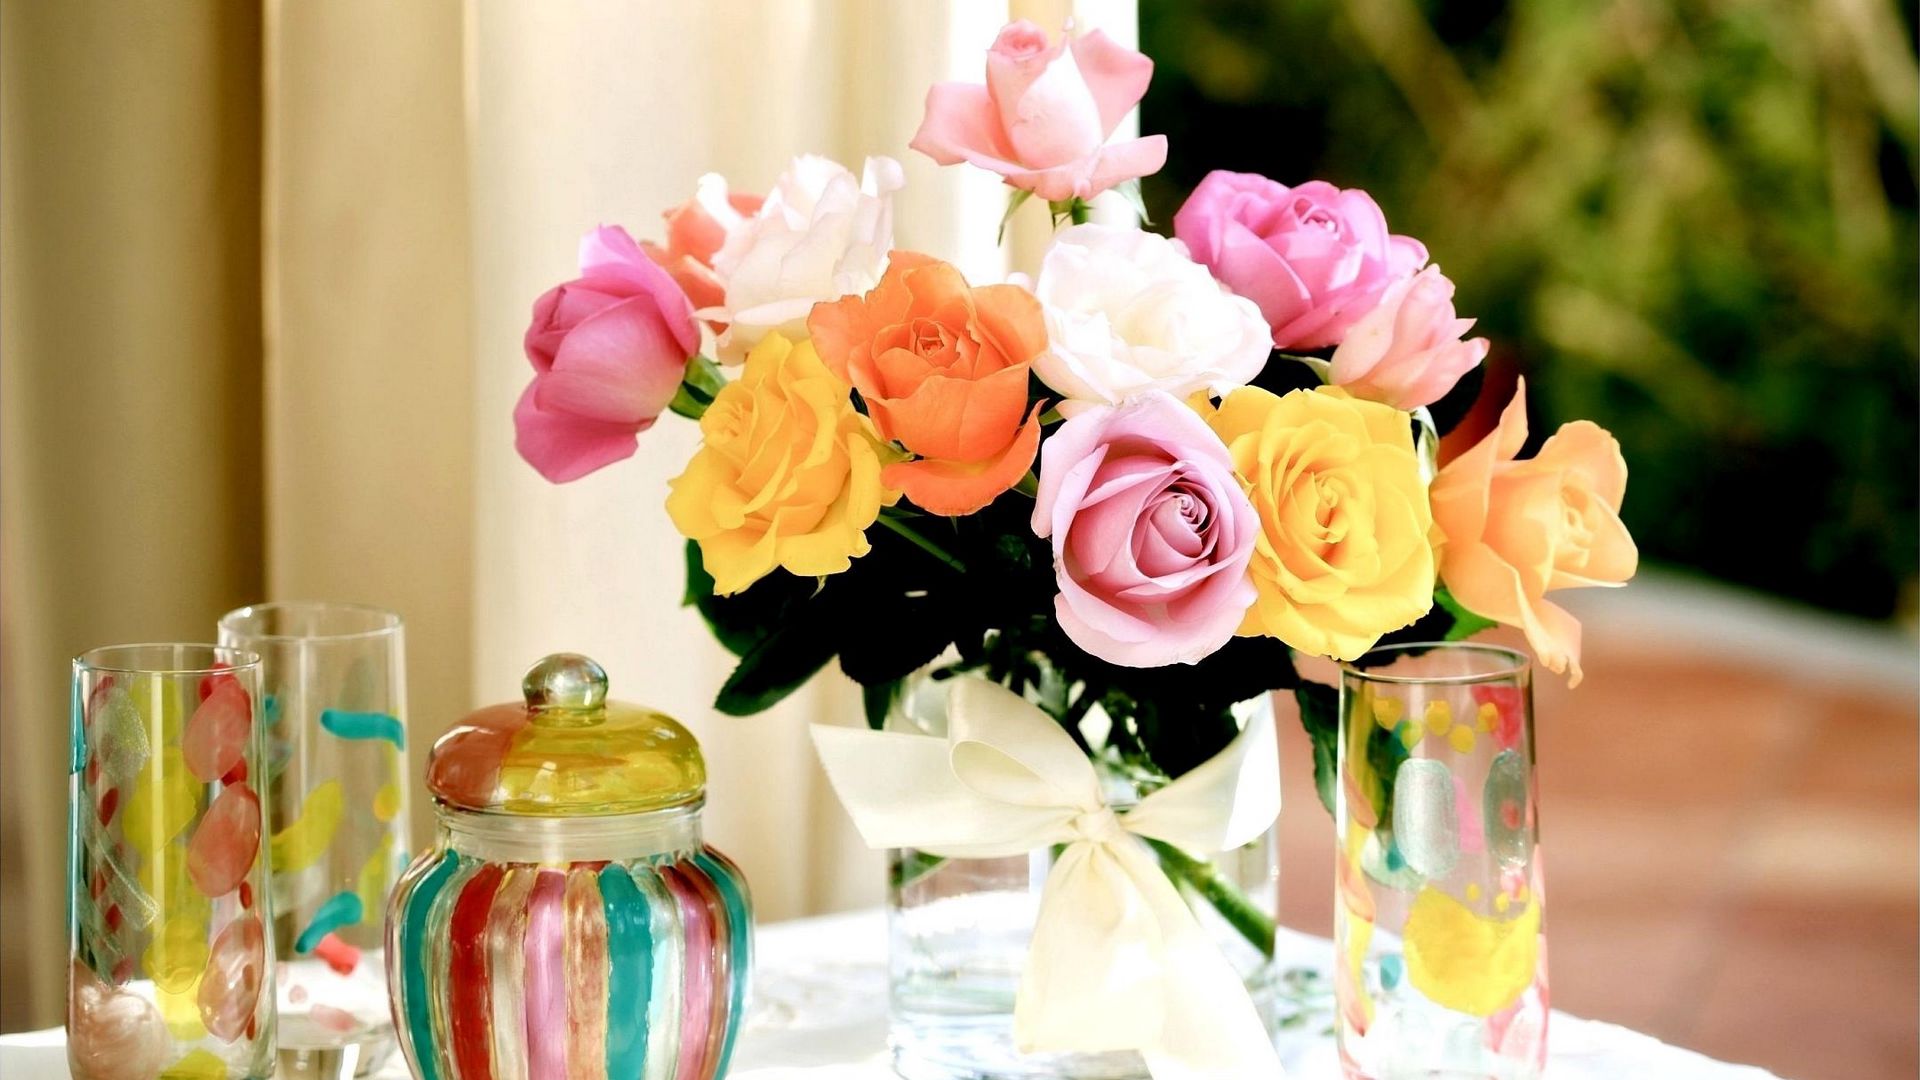 Цветы в стаканчиках на стол